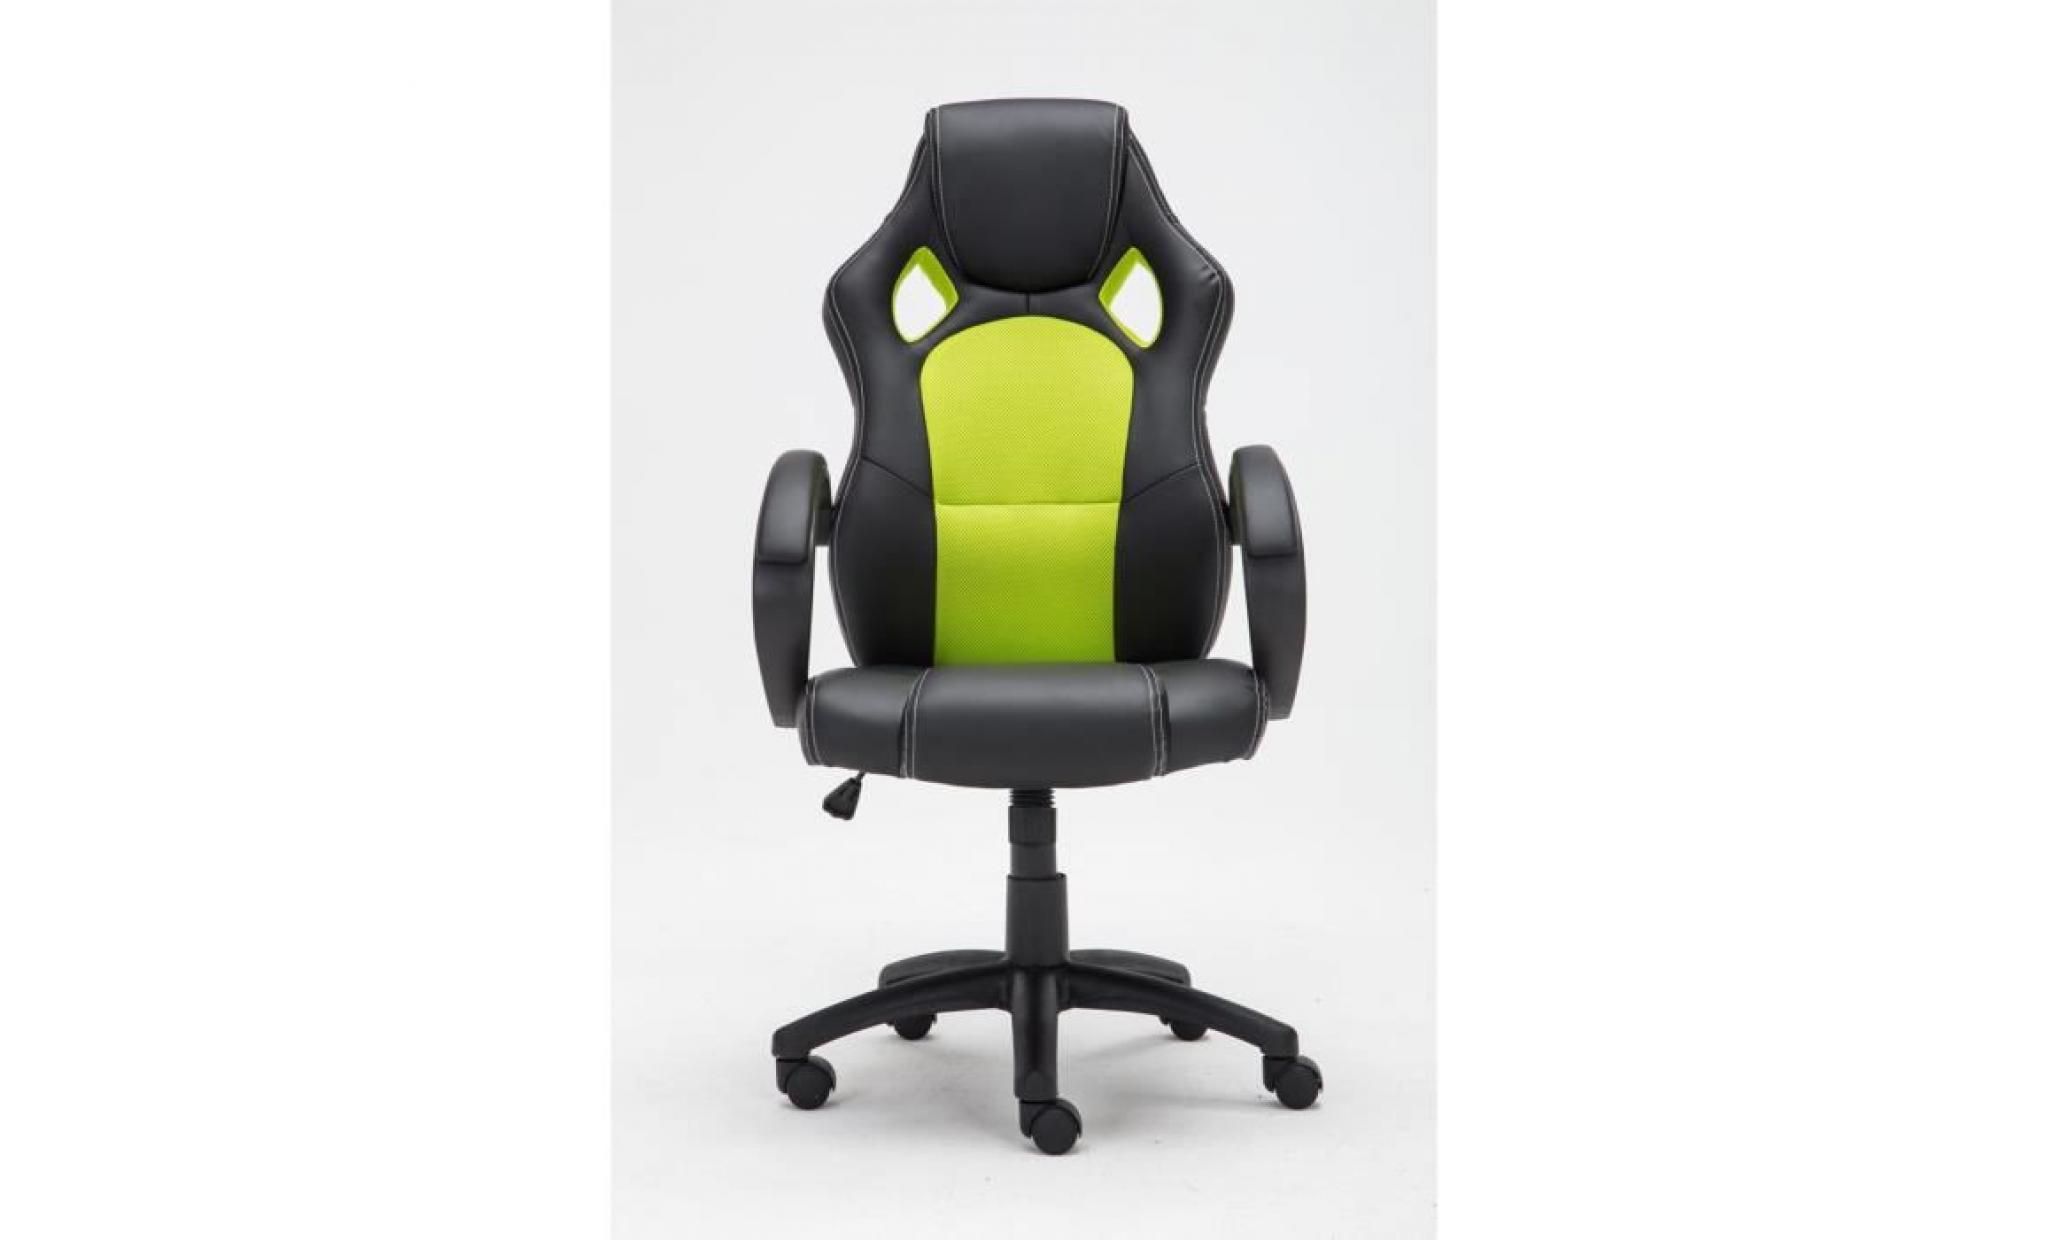 clp fauteuil de bureau fire, chaise bureau ajustable en hauteur de luxe, revêtement en pu, 7 couleurs au choix 110 cm blanc pas cher